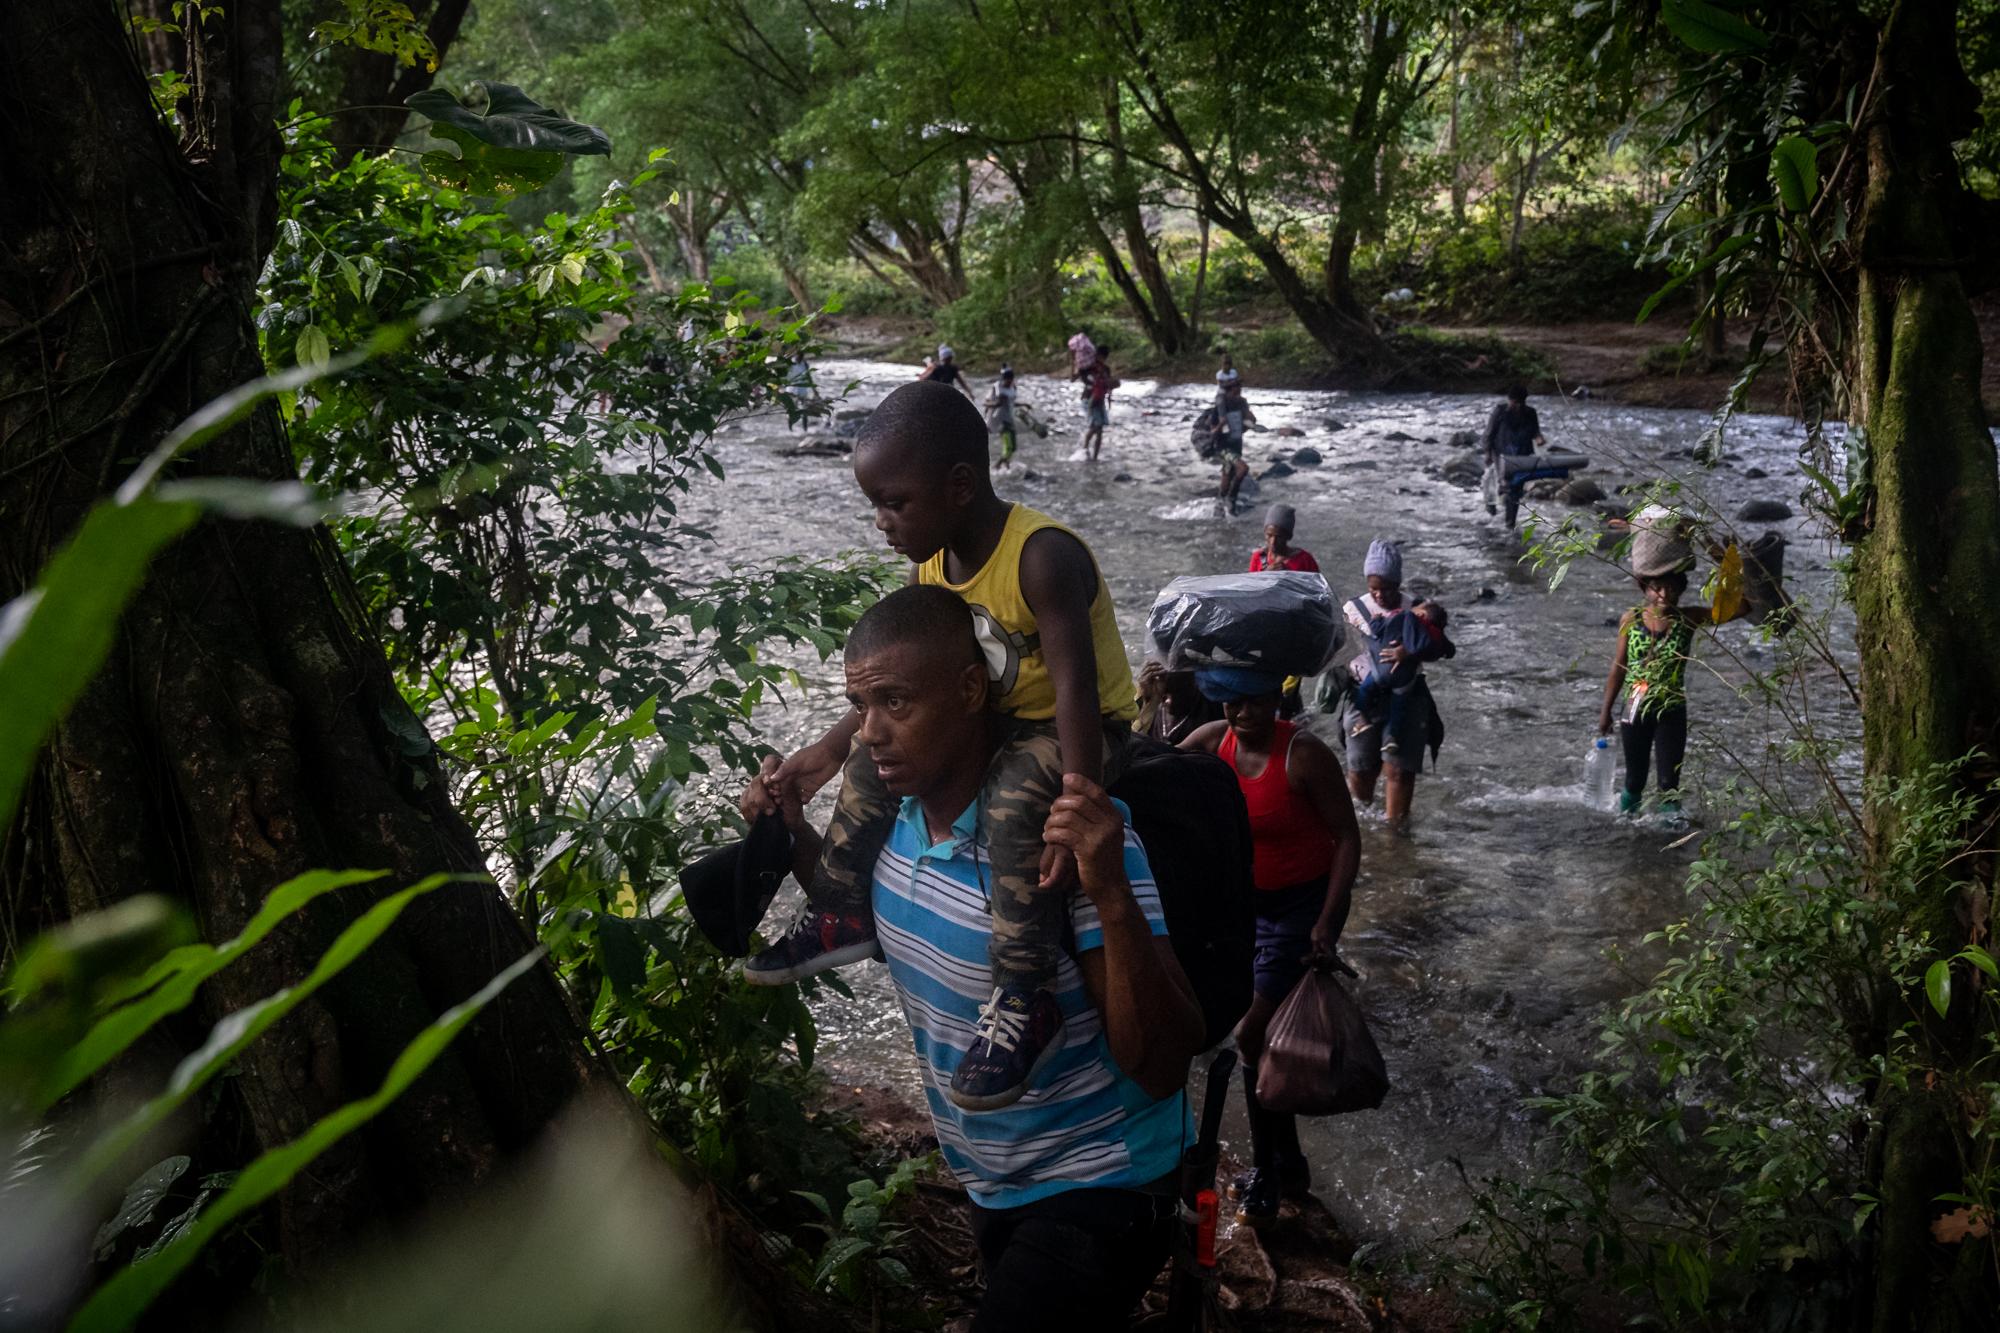 Inside The Derian Gap - A Haitian migrant carries his son through the Darien Gap...